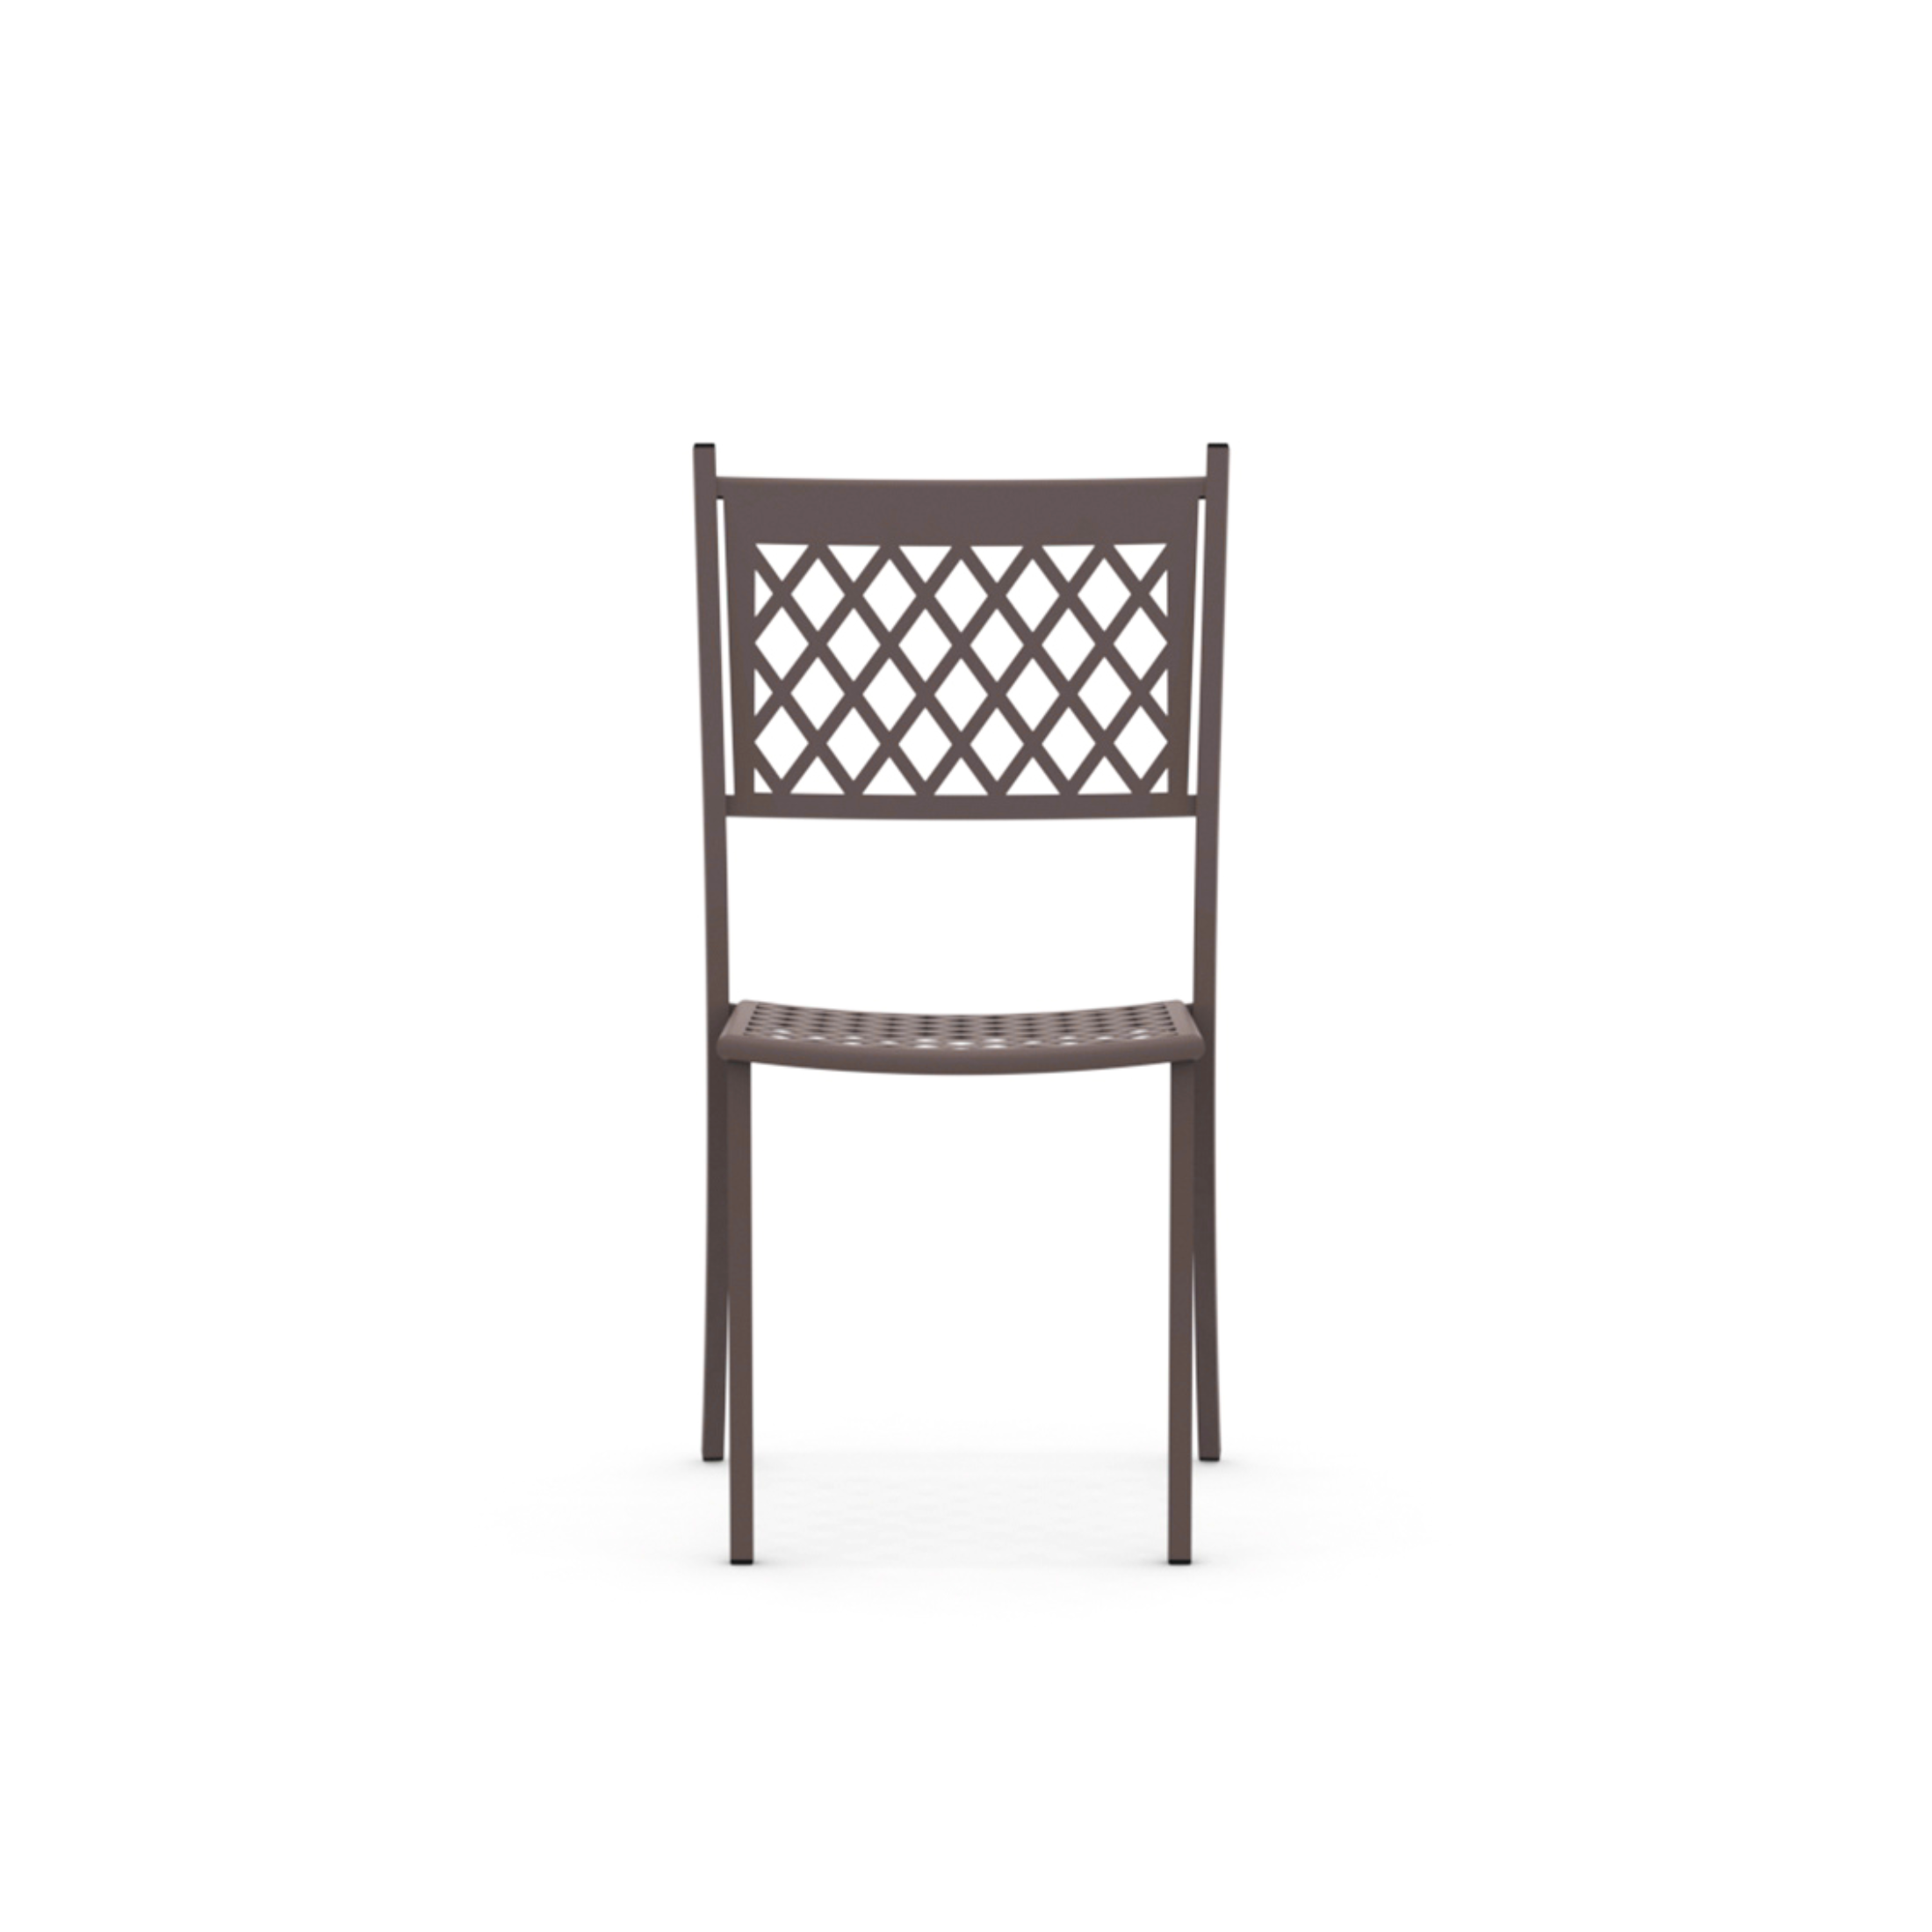 Chaise de jardin empilable "Summertime" en métal peint 49x57 cm 95h